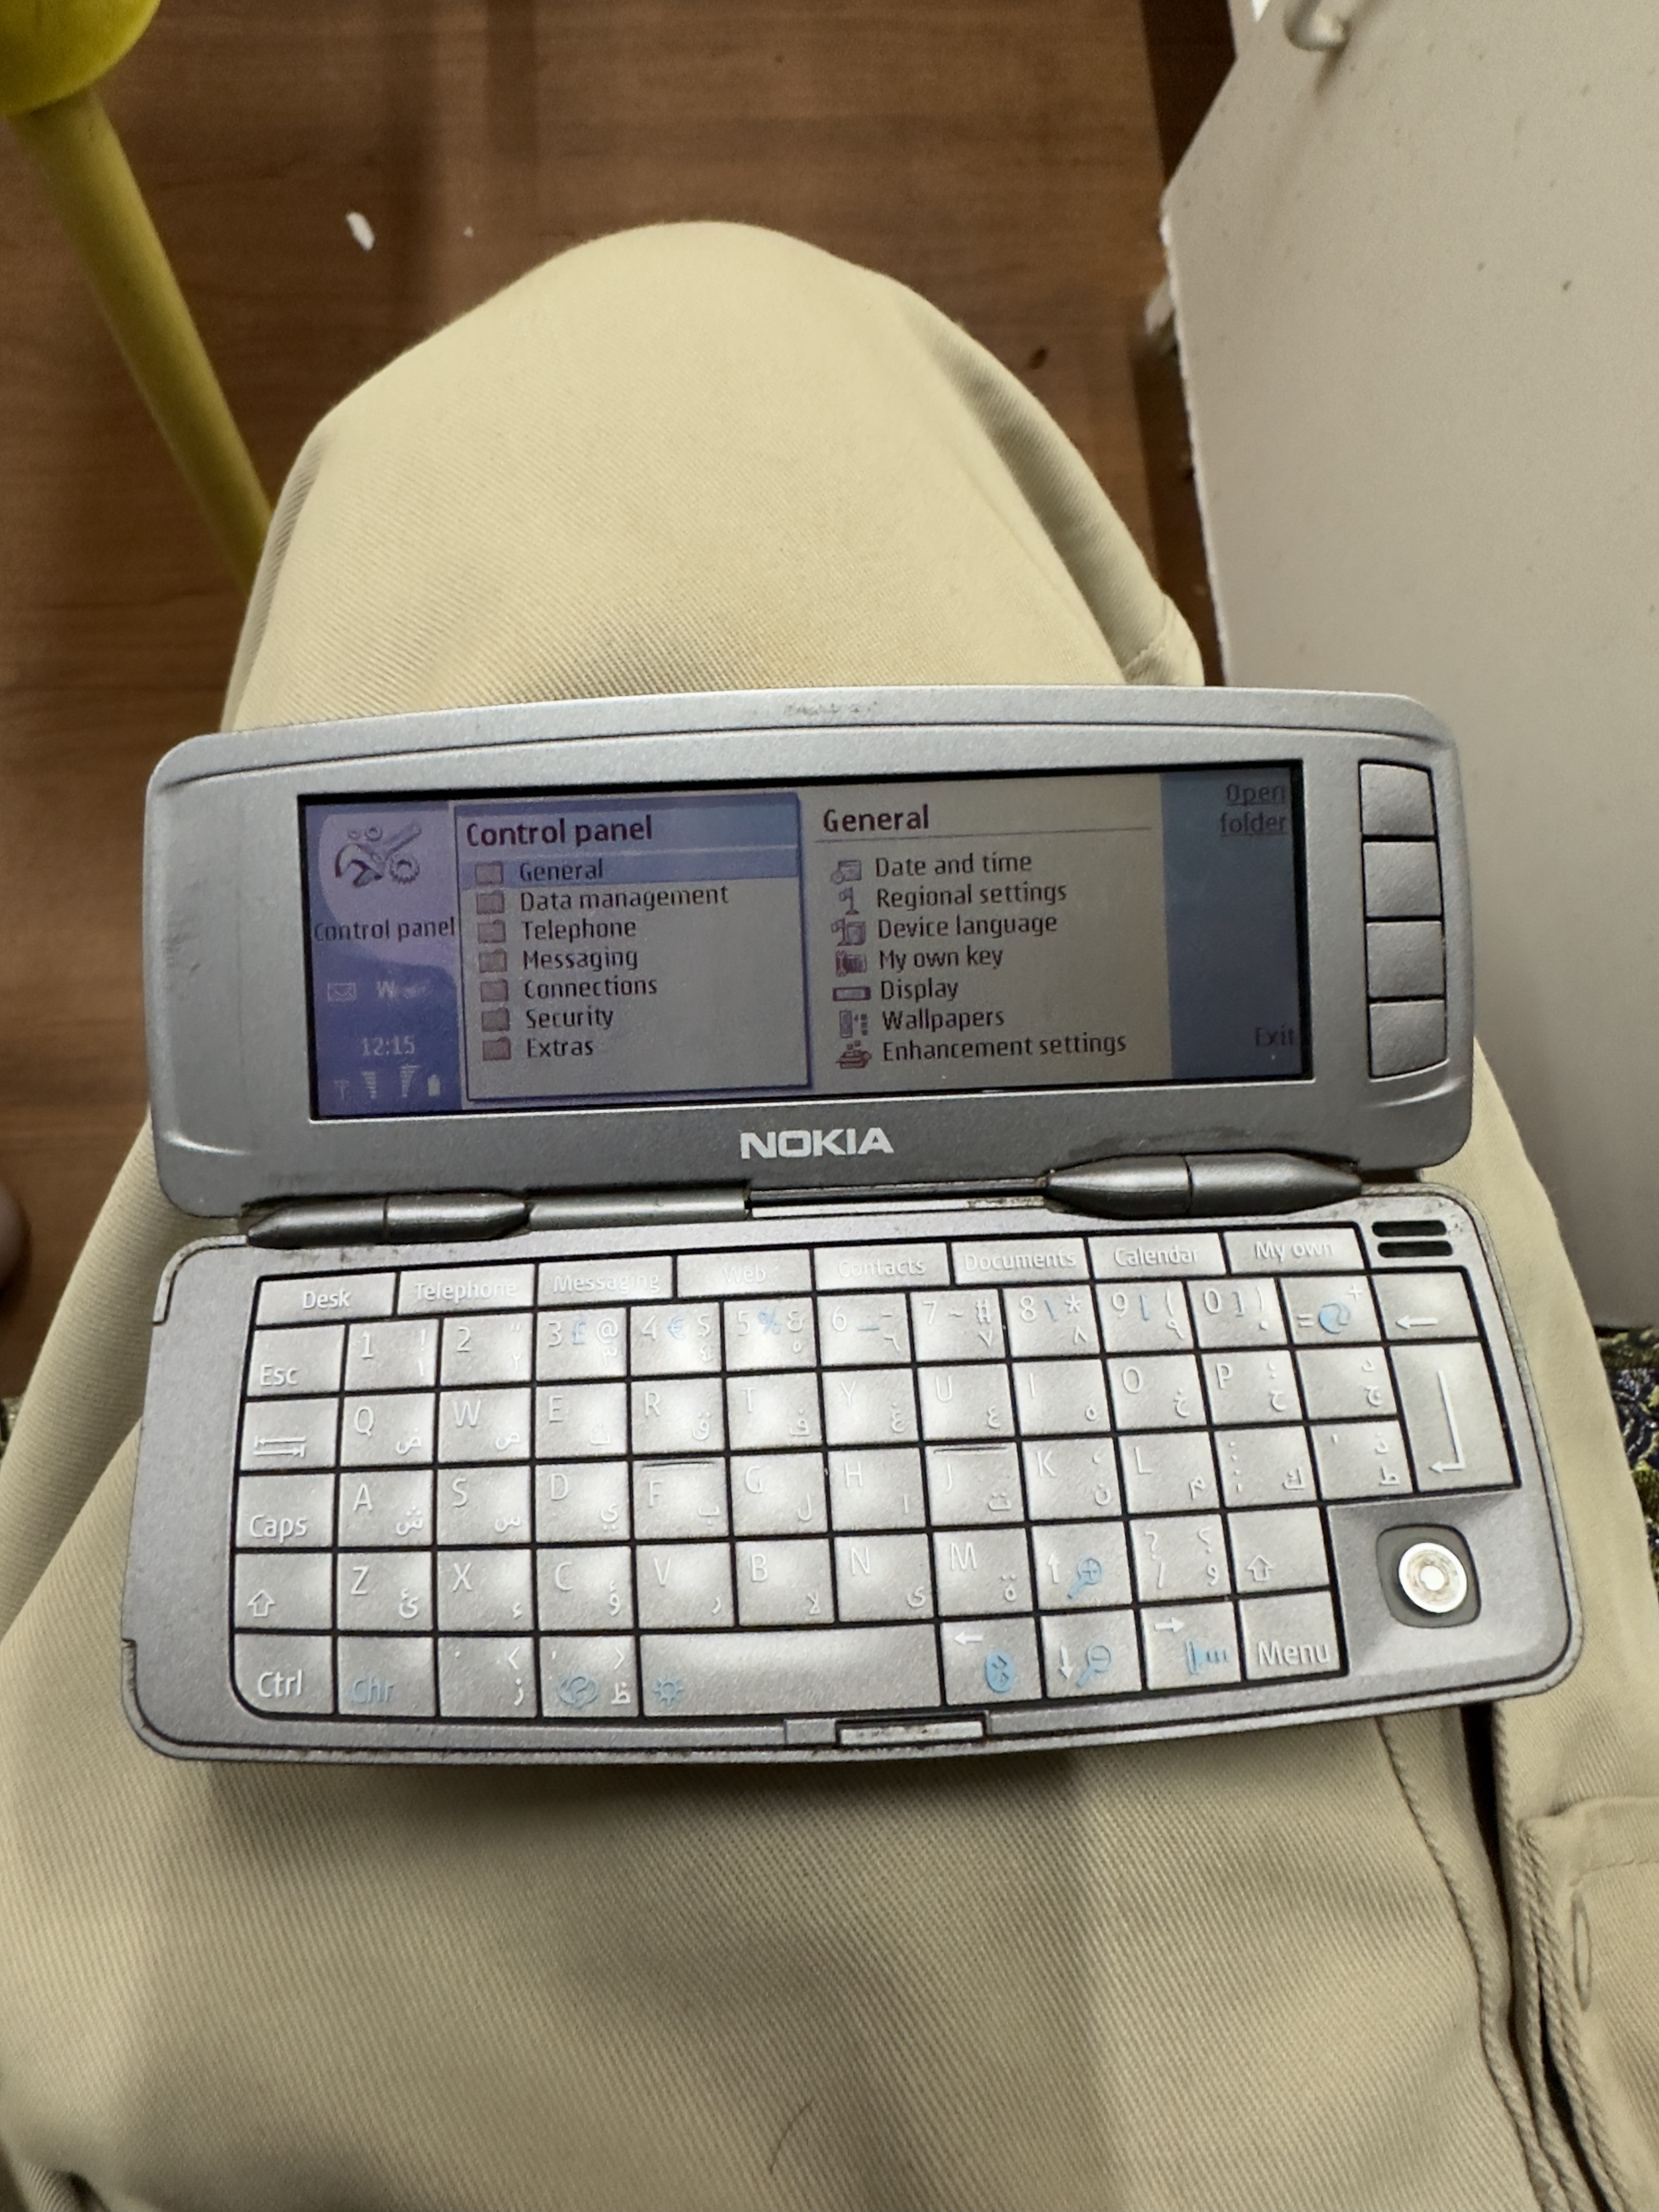 Nokia 9300i communicator